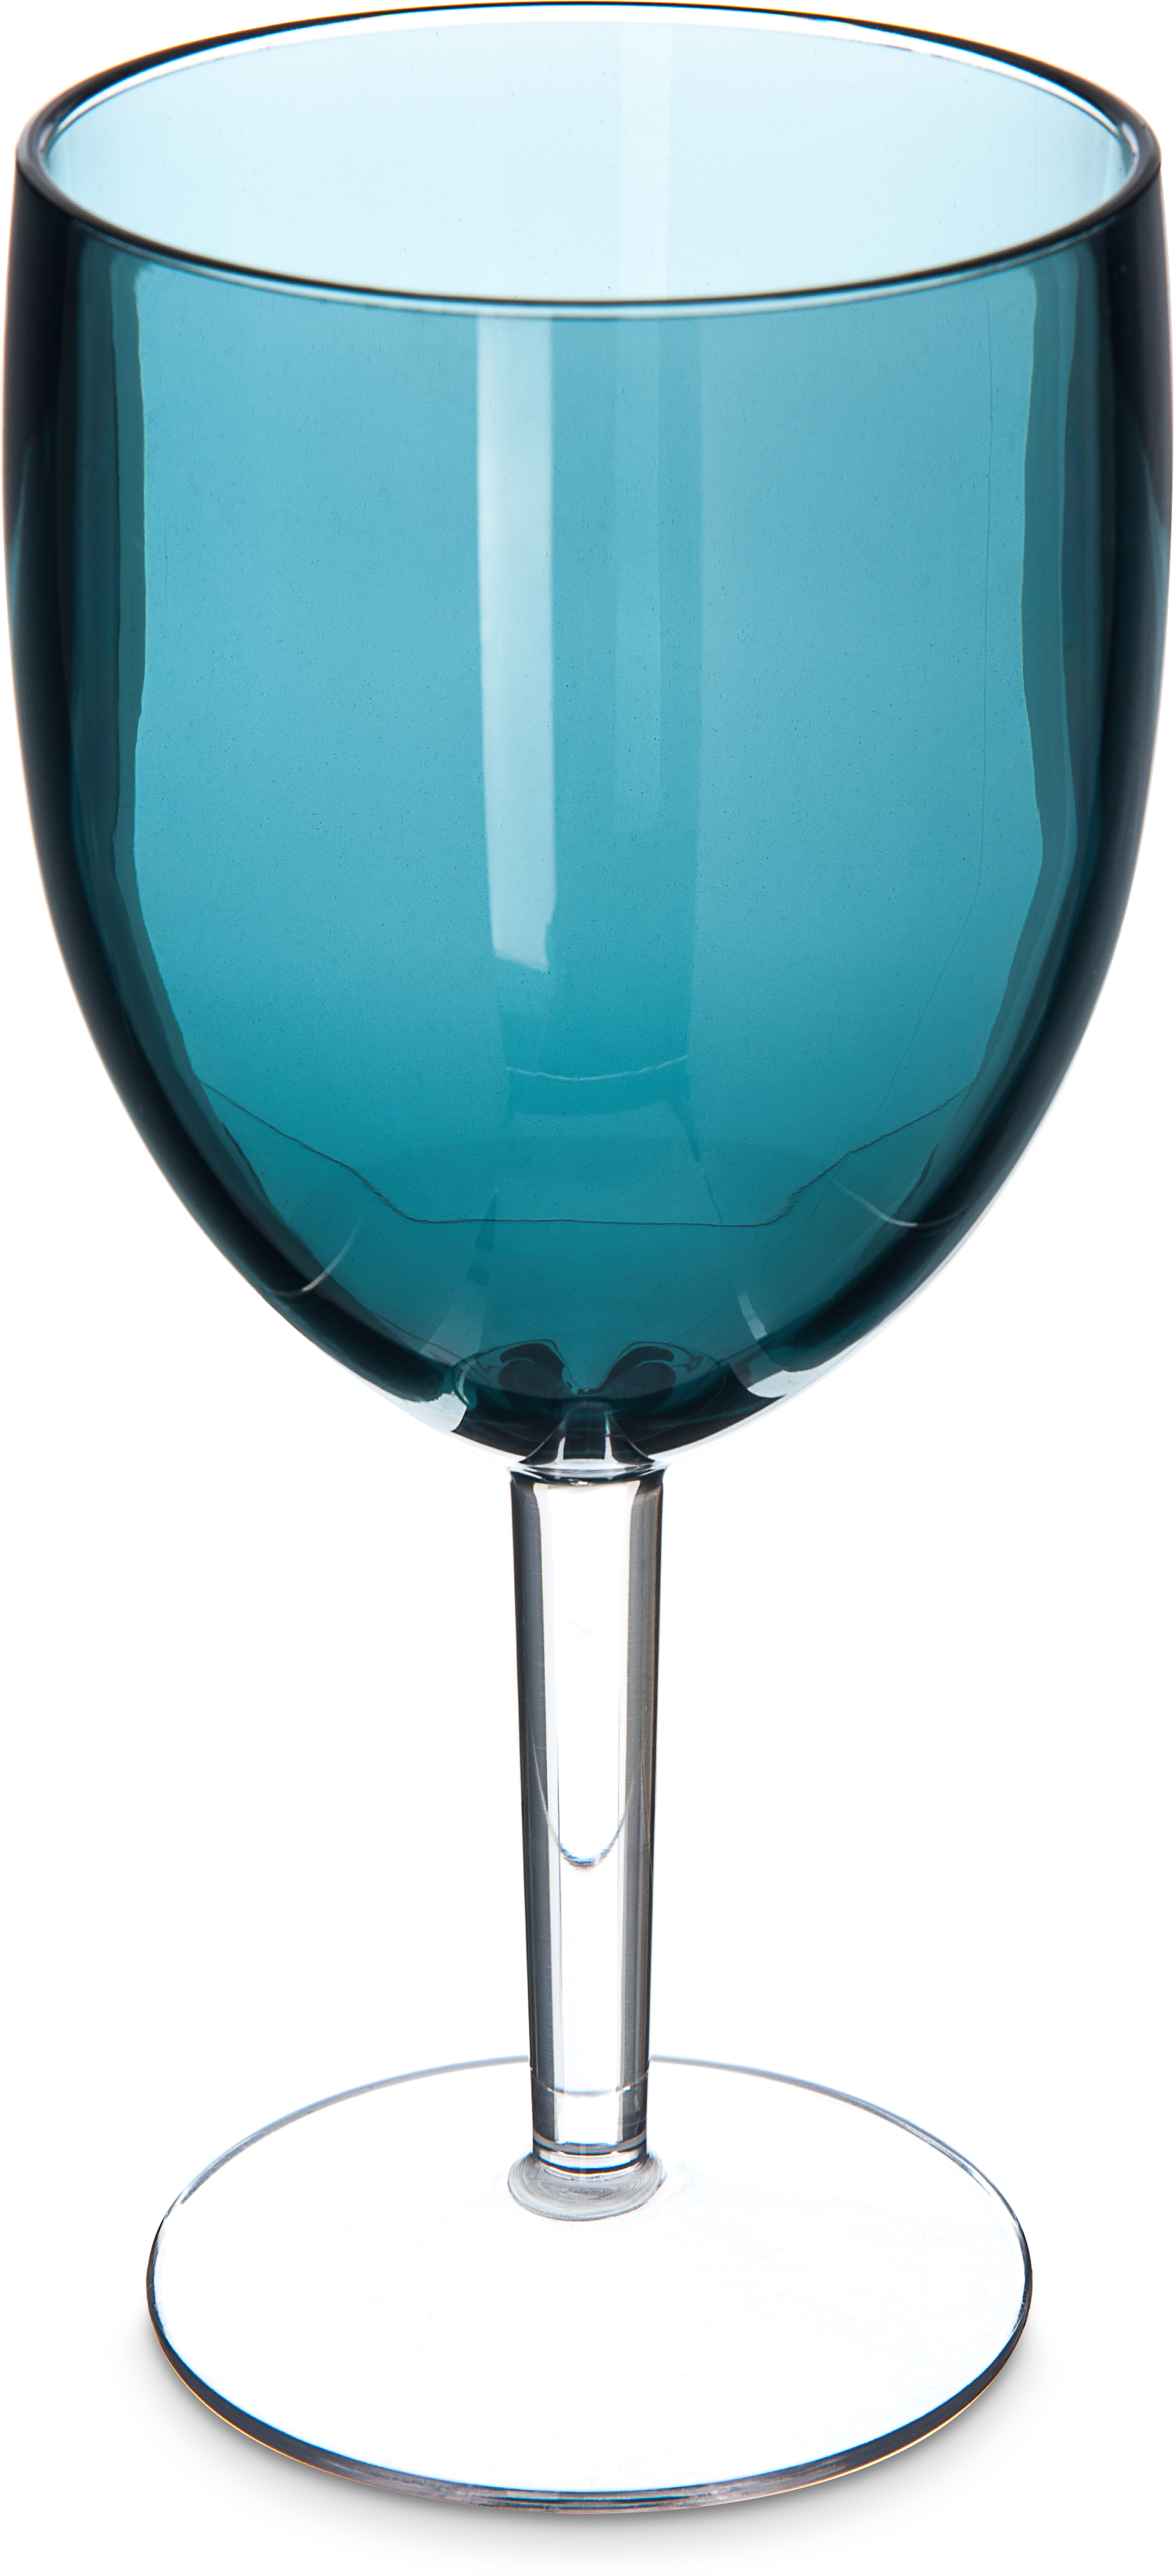 Epicure Cased Wine Goblet 15.2 oz - Teal